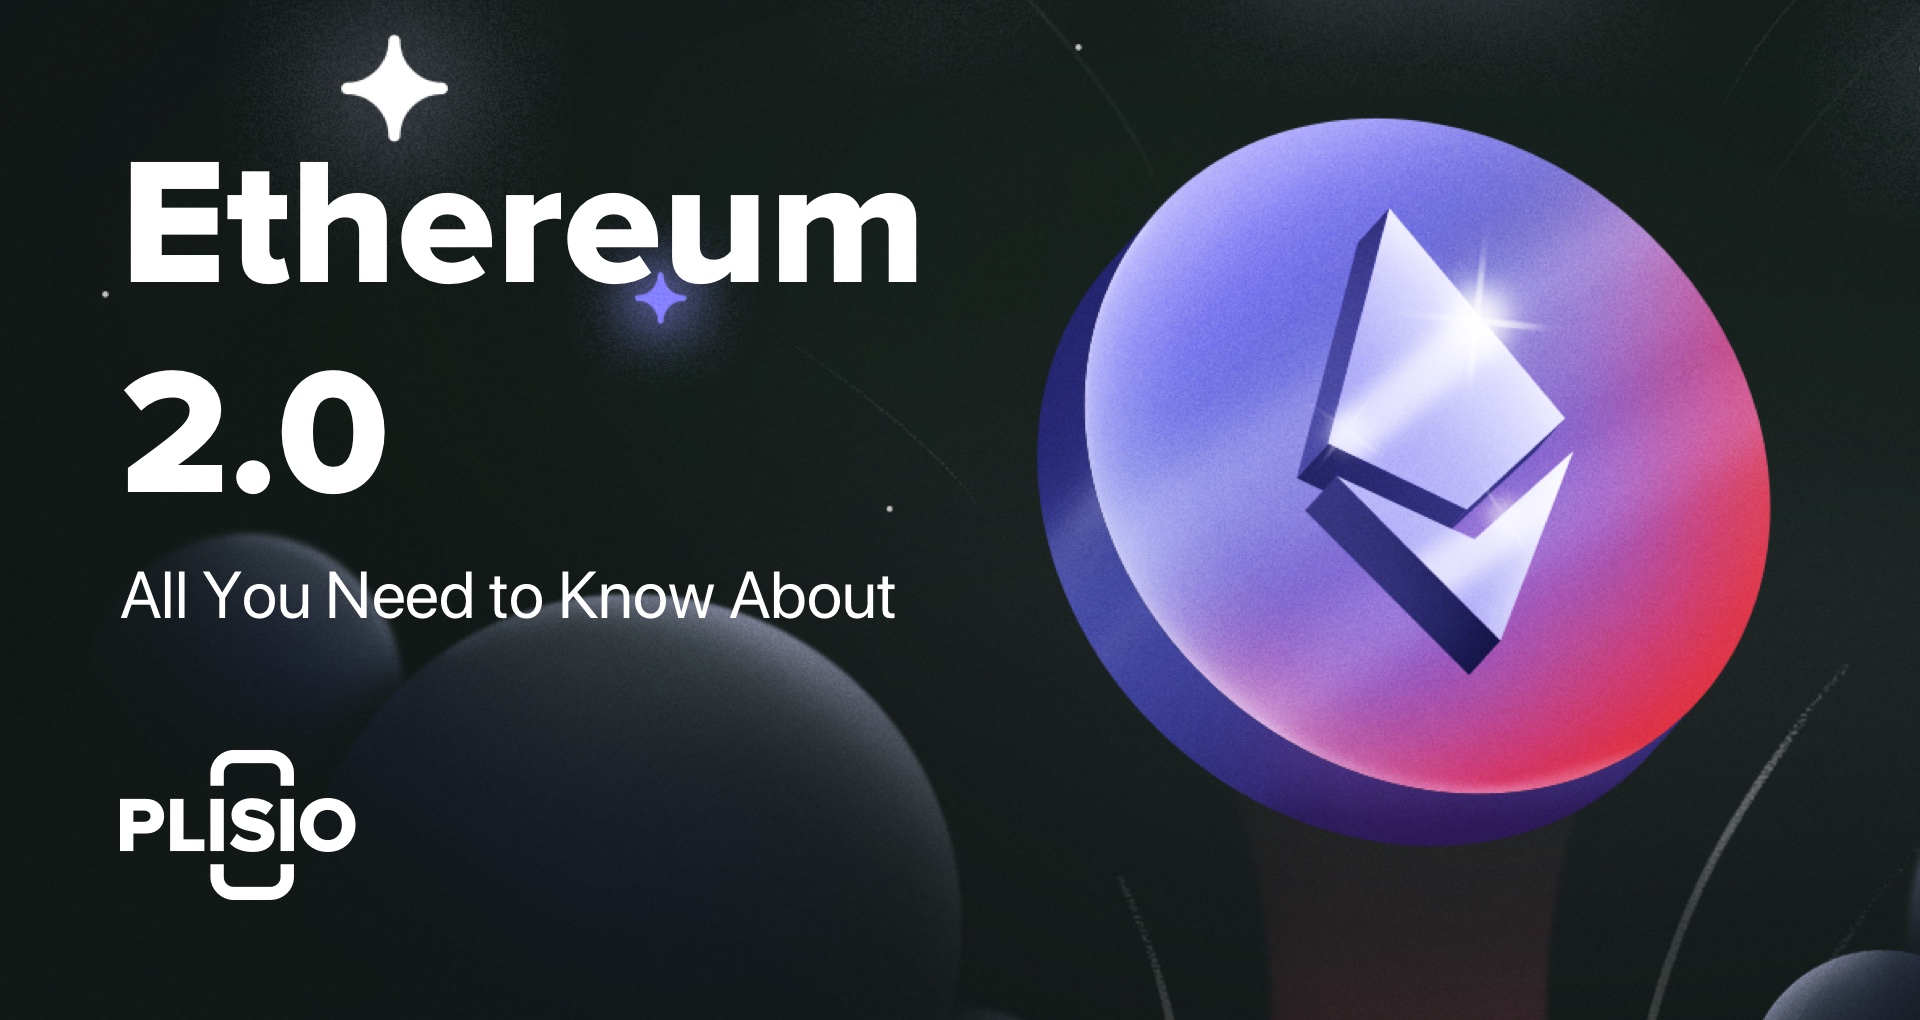 Todo lo que necesita saber sobre Ethereum 2.0